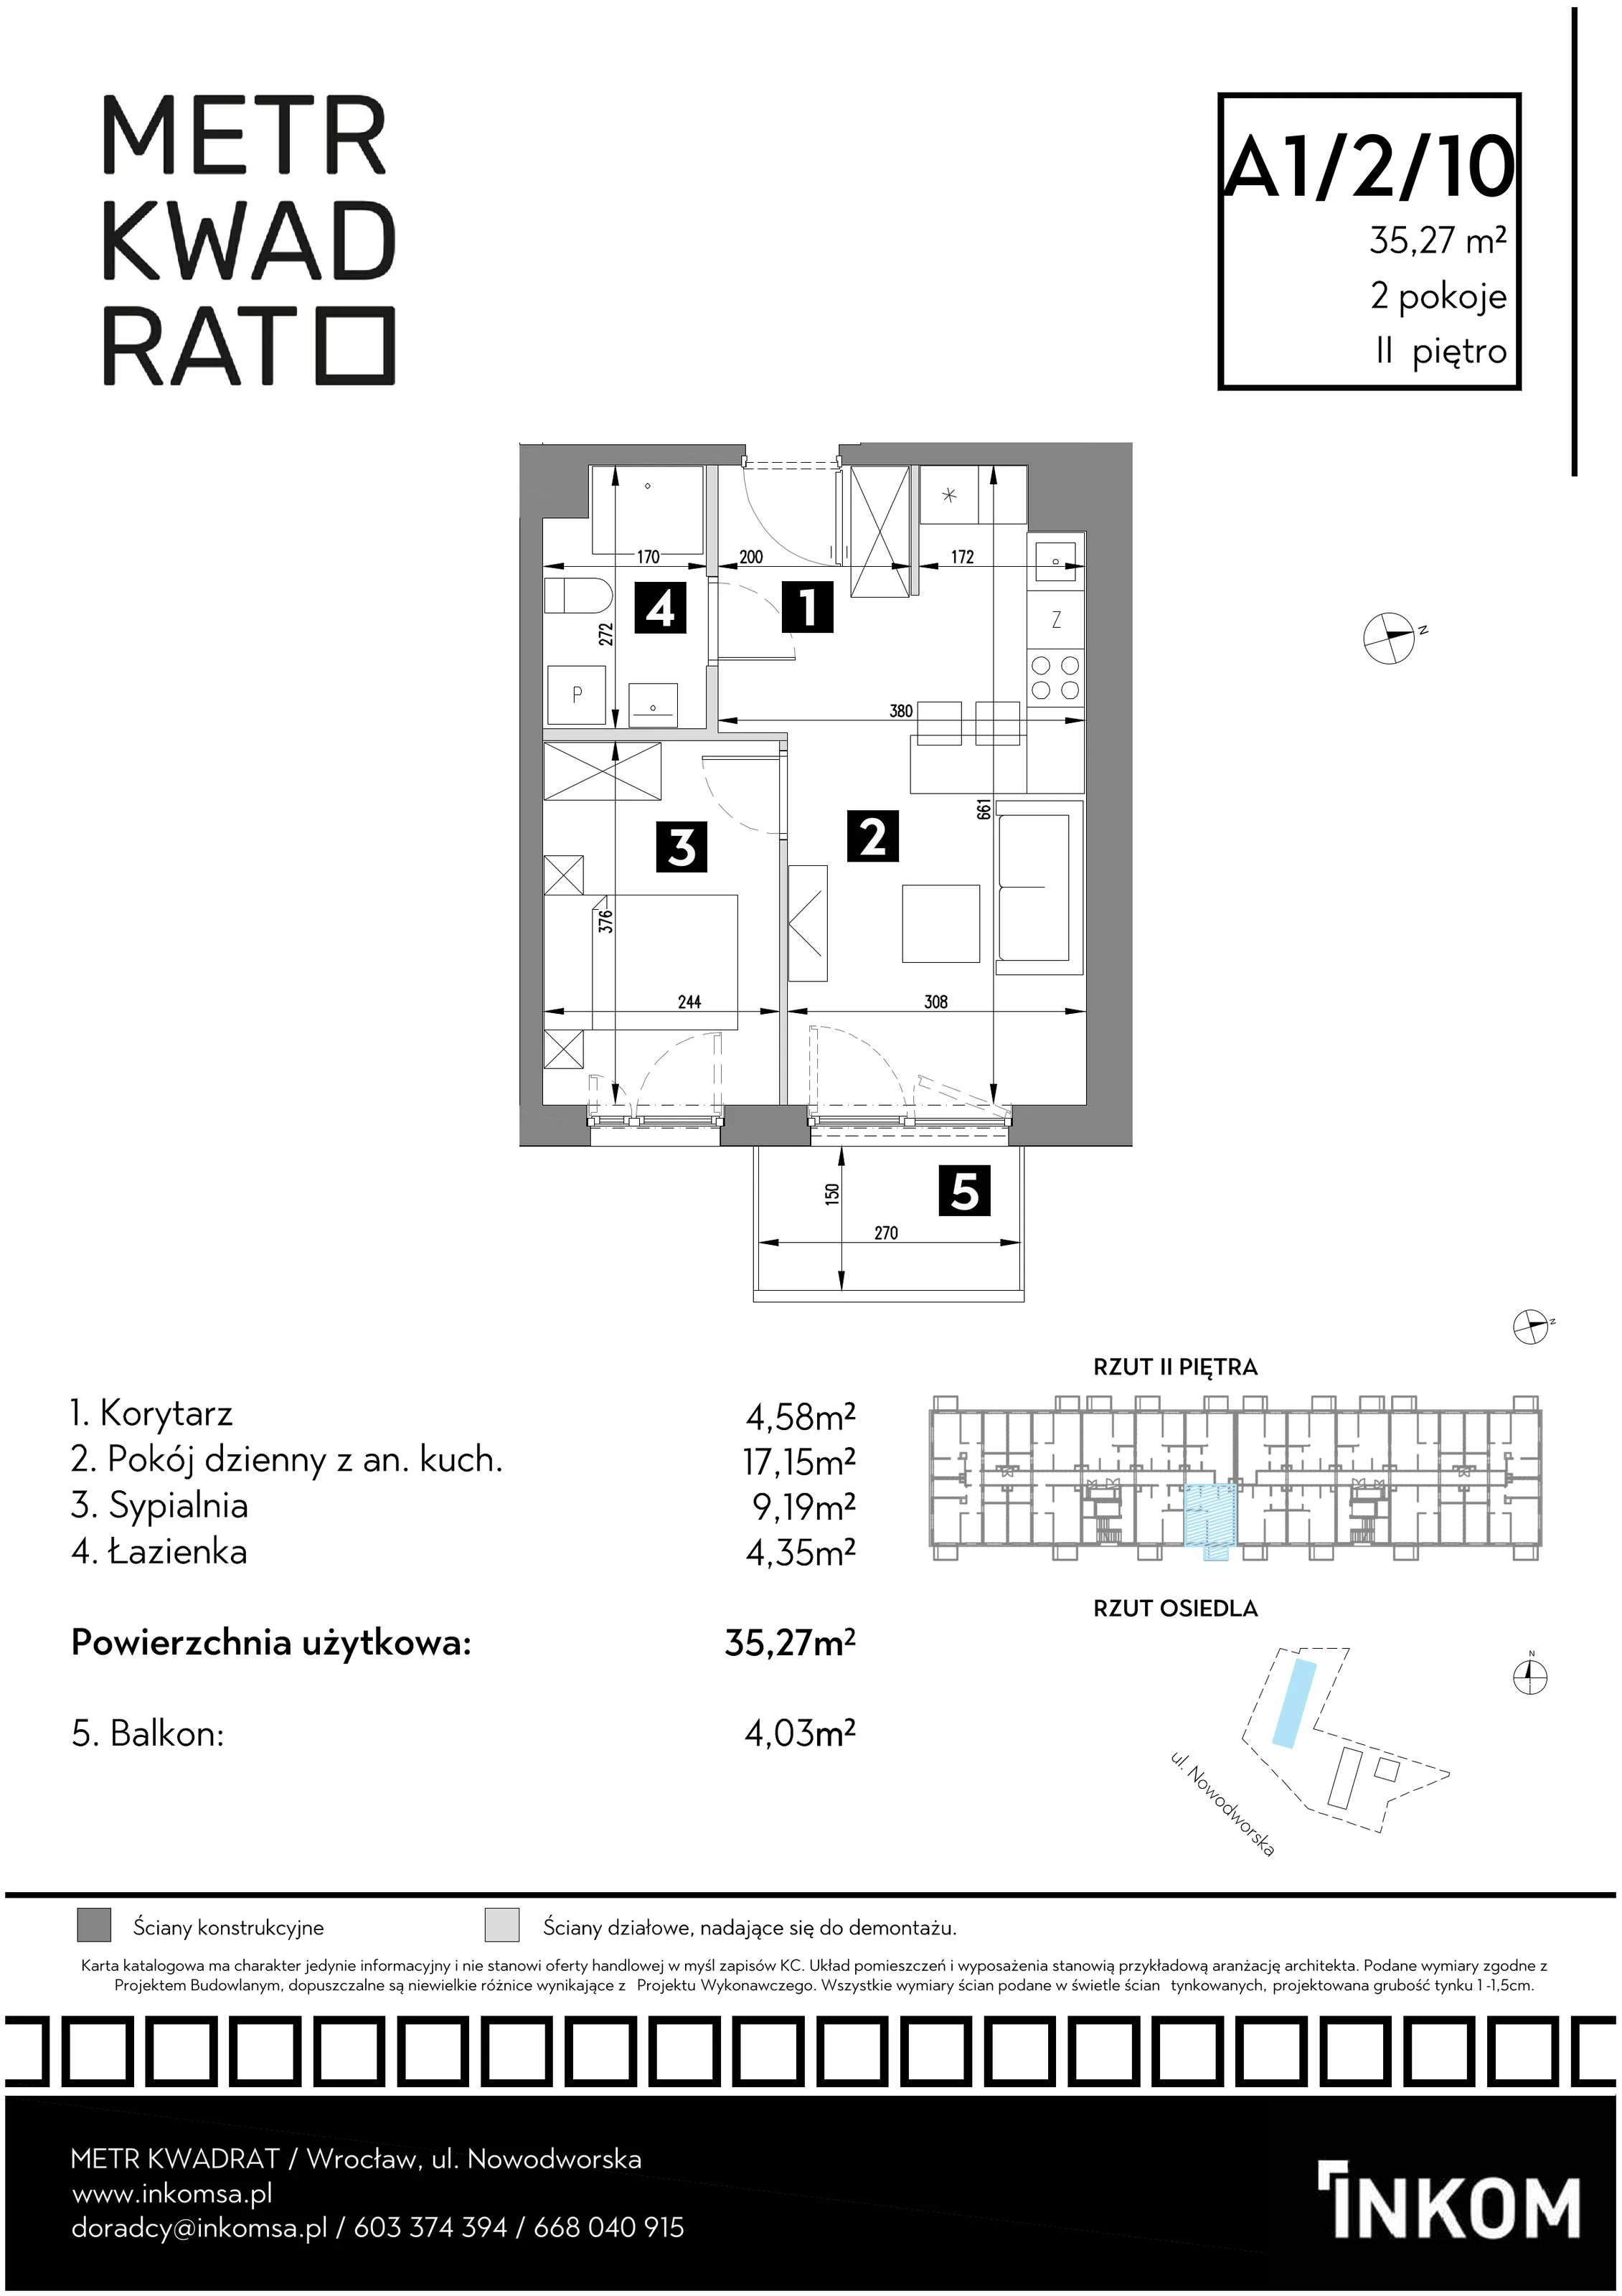 Mieszkanie 35,27 m², piętro 2, oferta nr A1/2/10, Metr Kwadrat, Wrocław, Nowy Dwór, ul. Nowodworska 17B